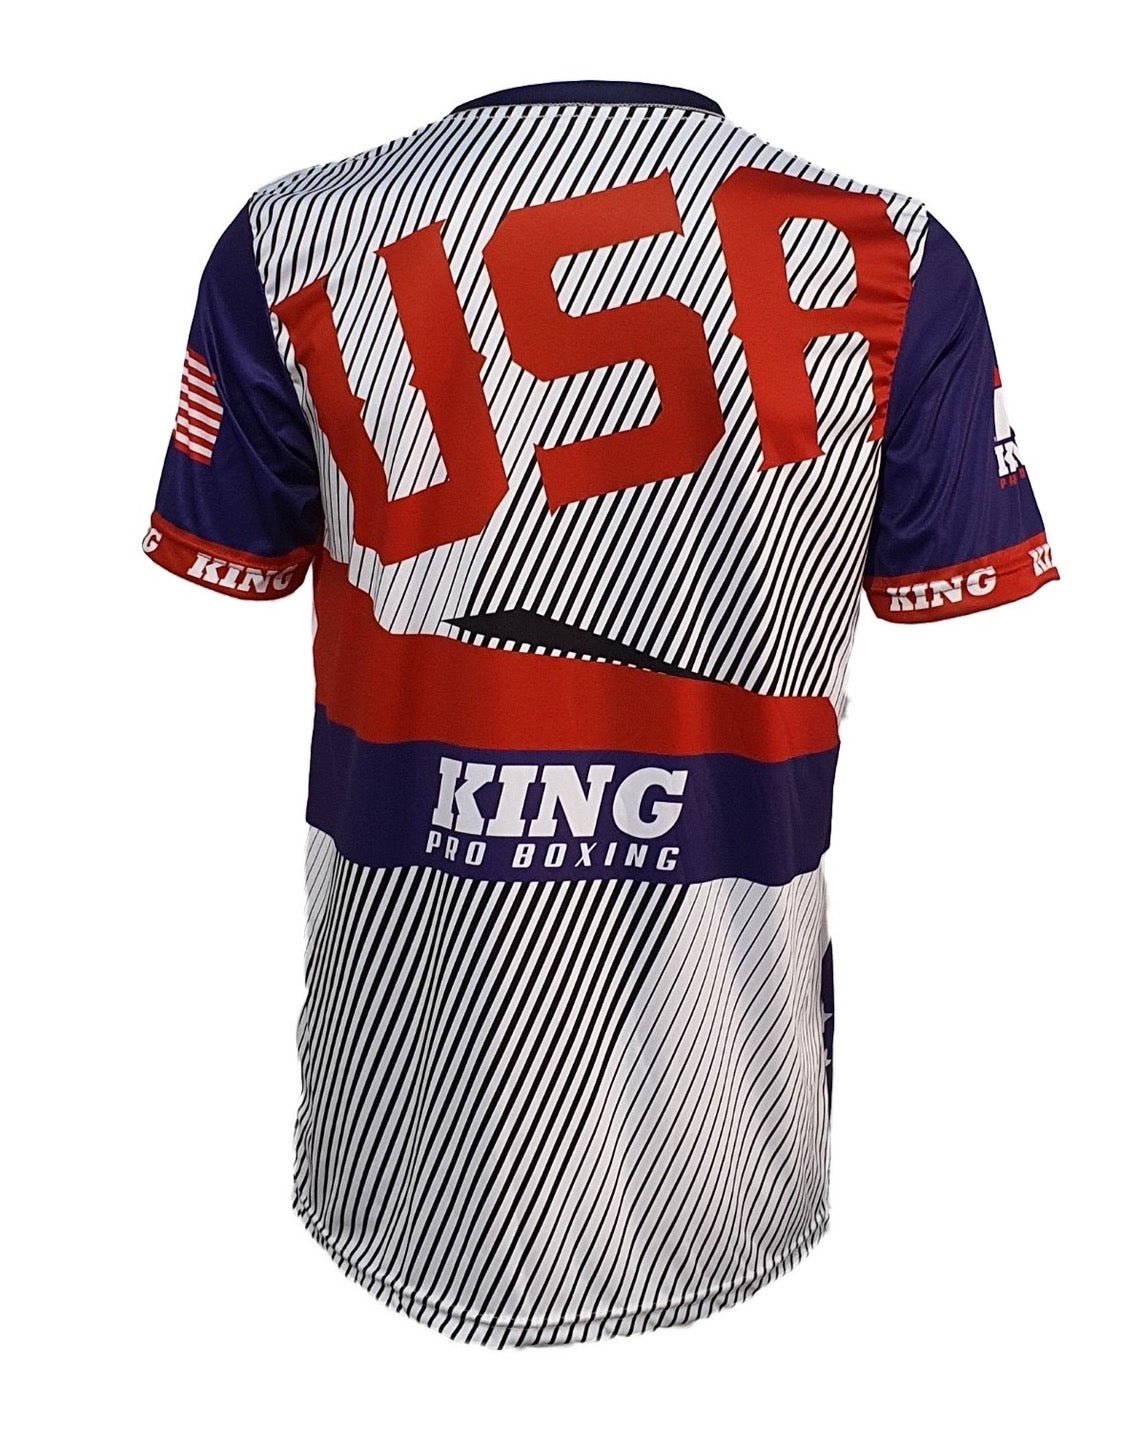 King Pro Boxing T-shirt USA King Pro Boxing